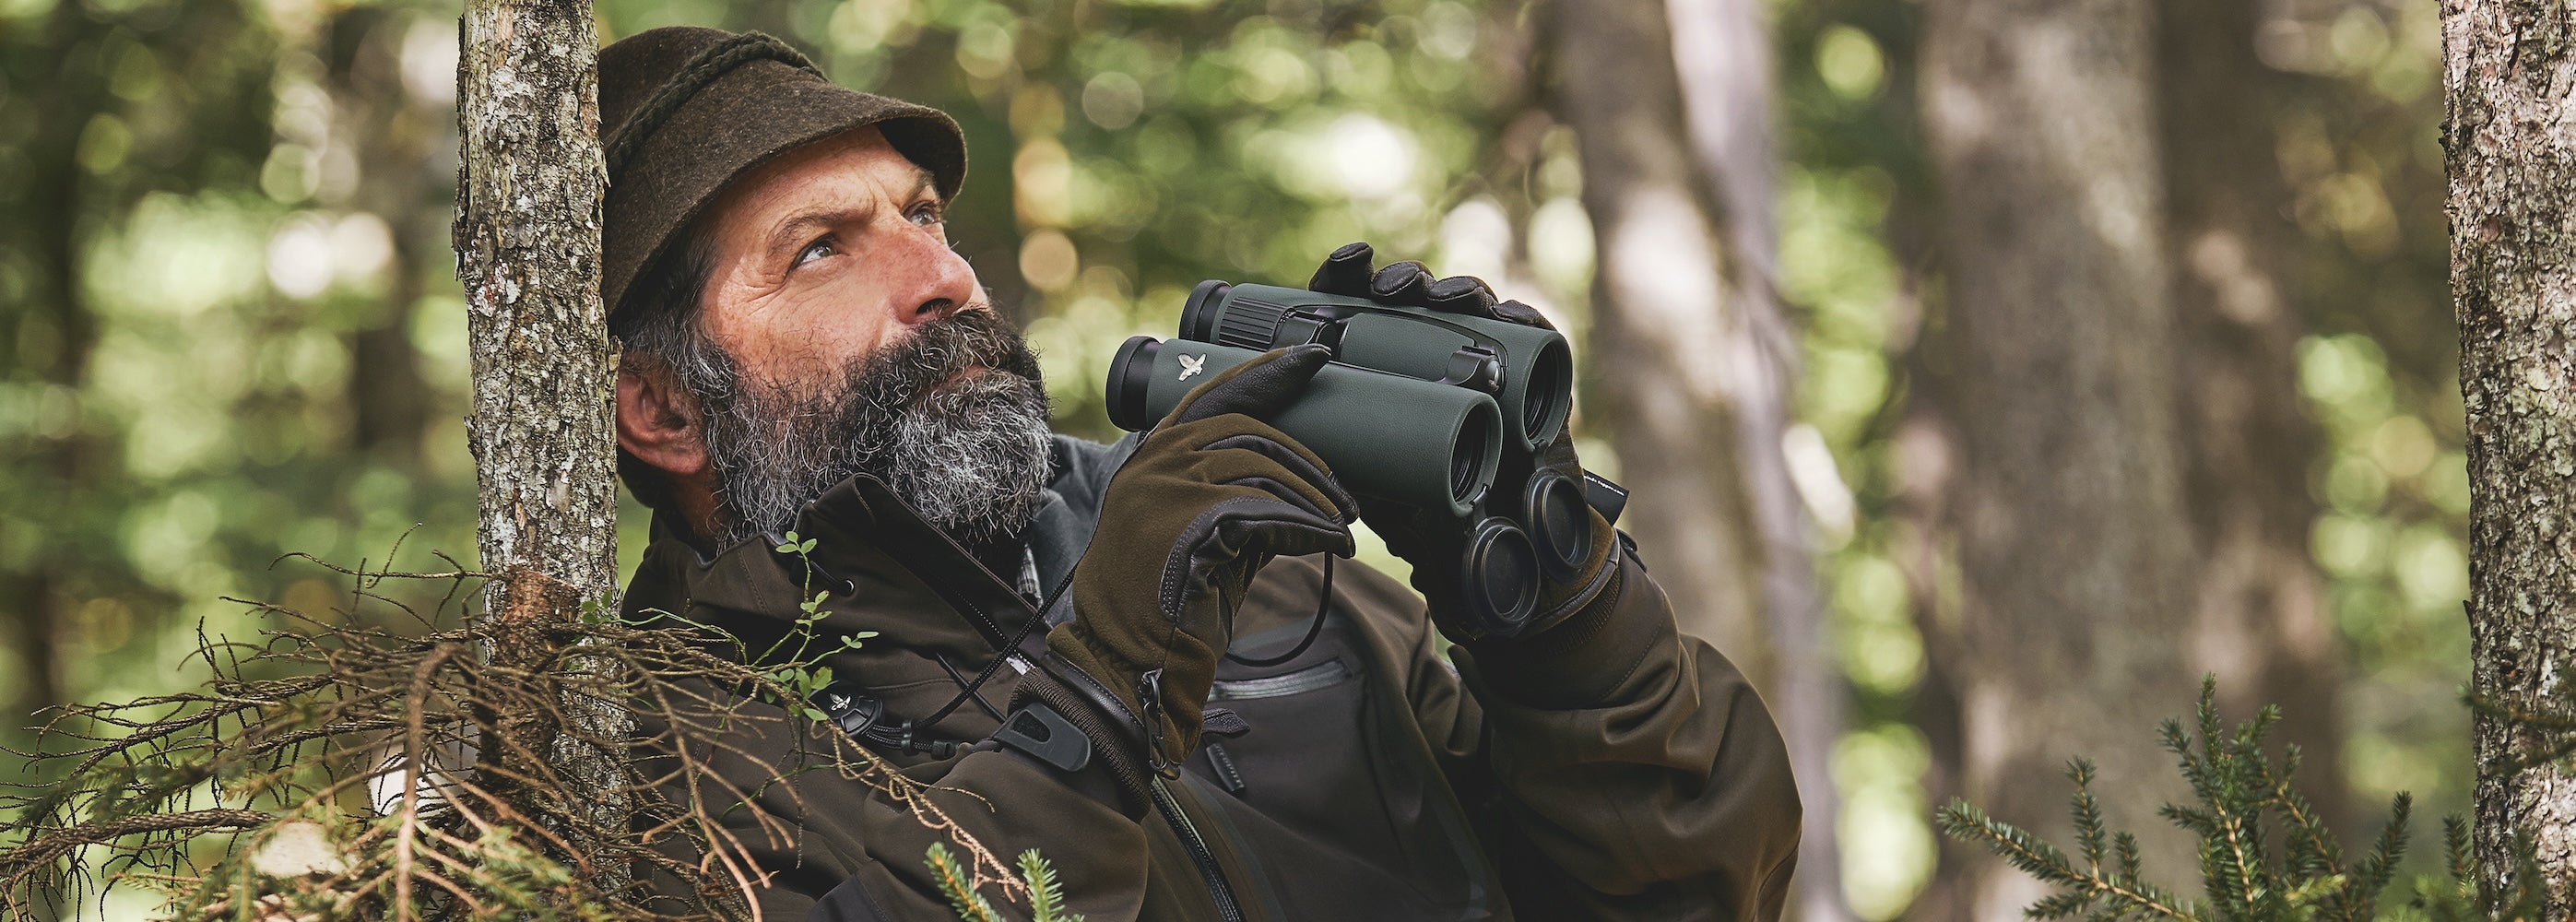 Explore Swarovski impressive range of Binoculars